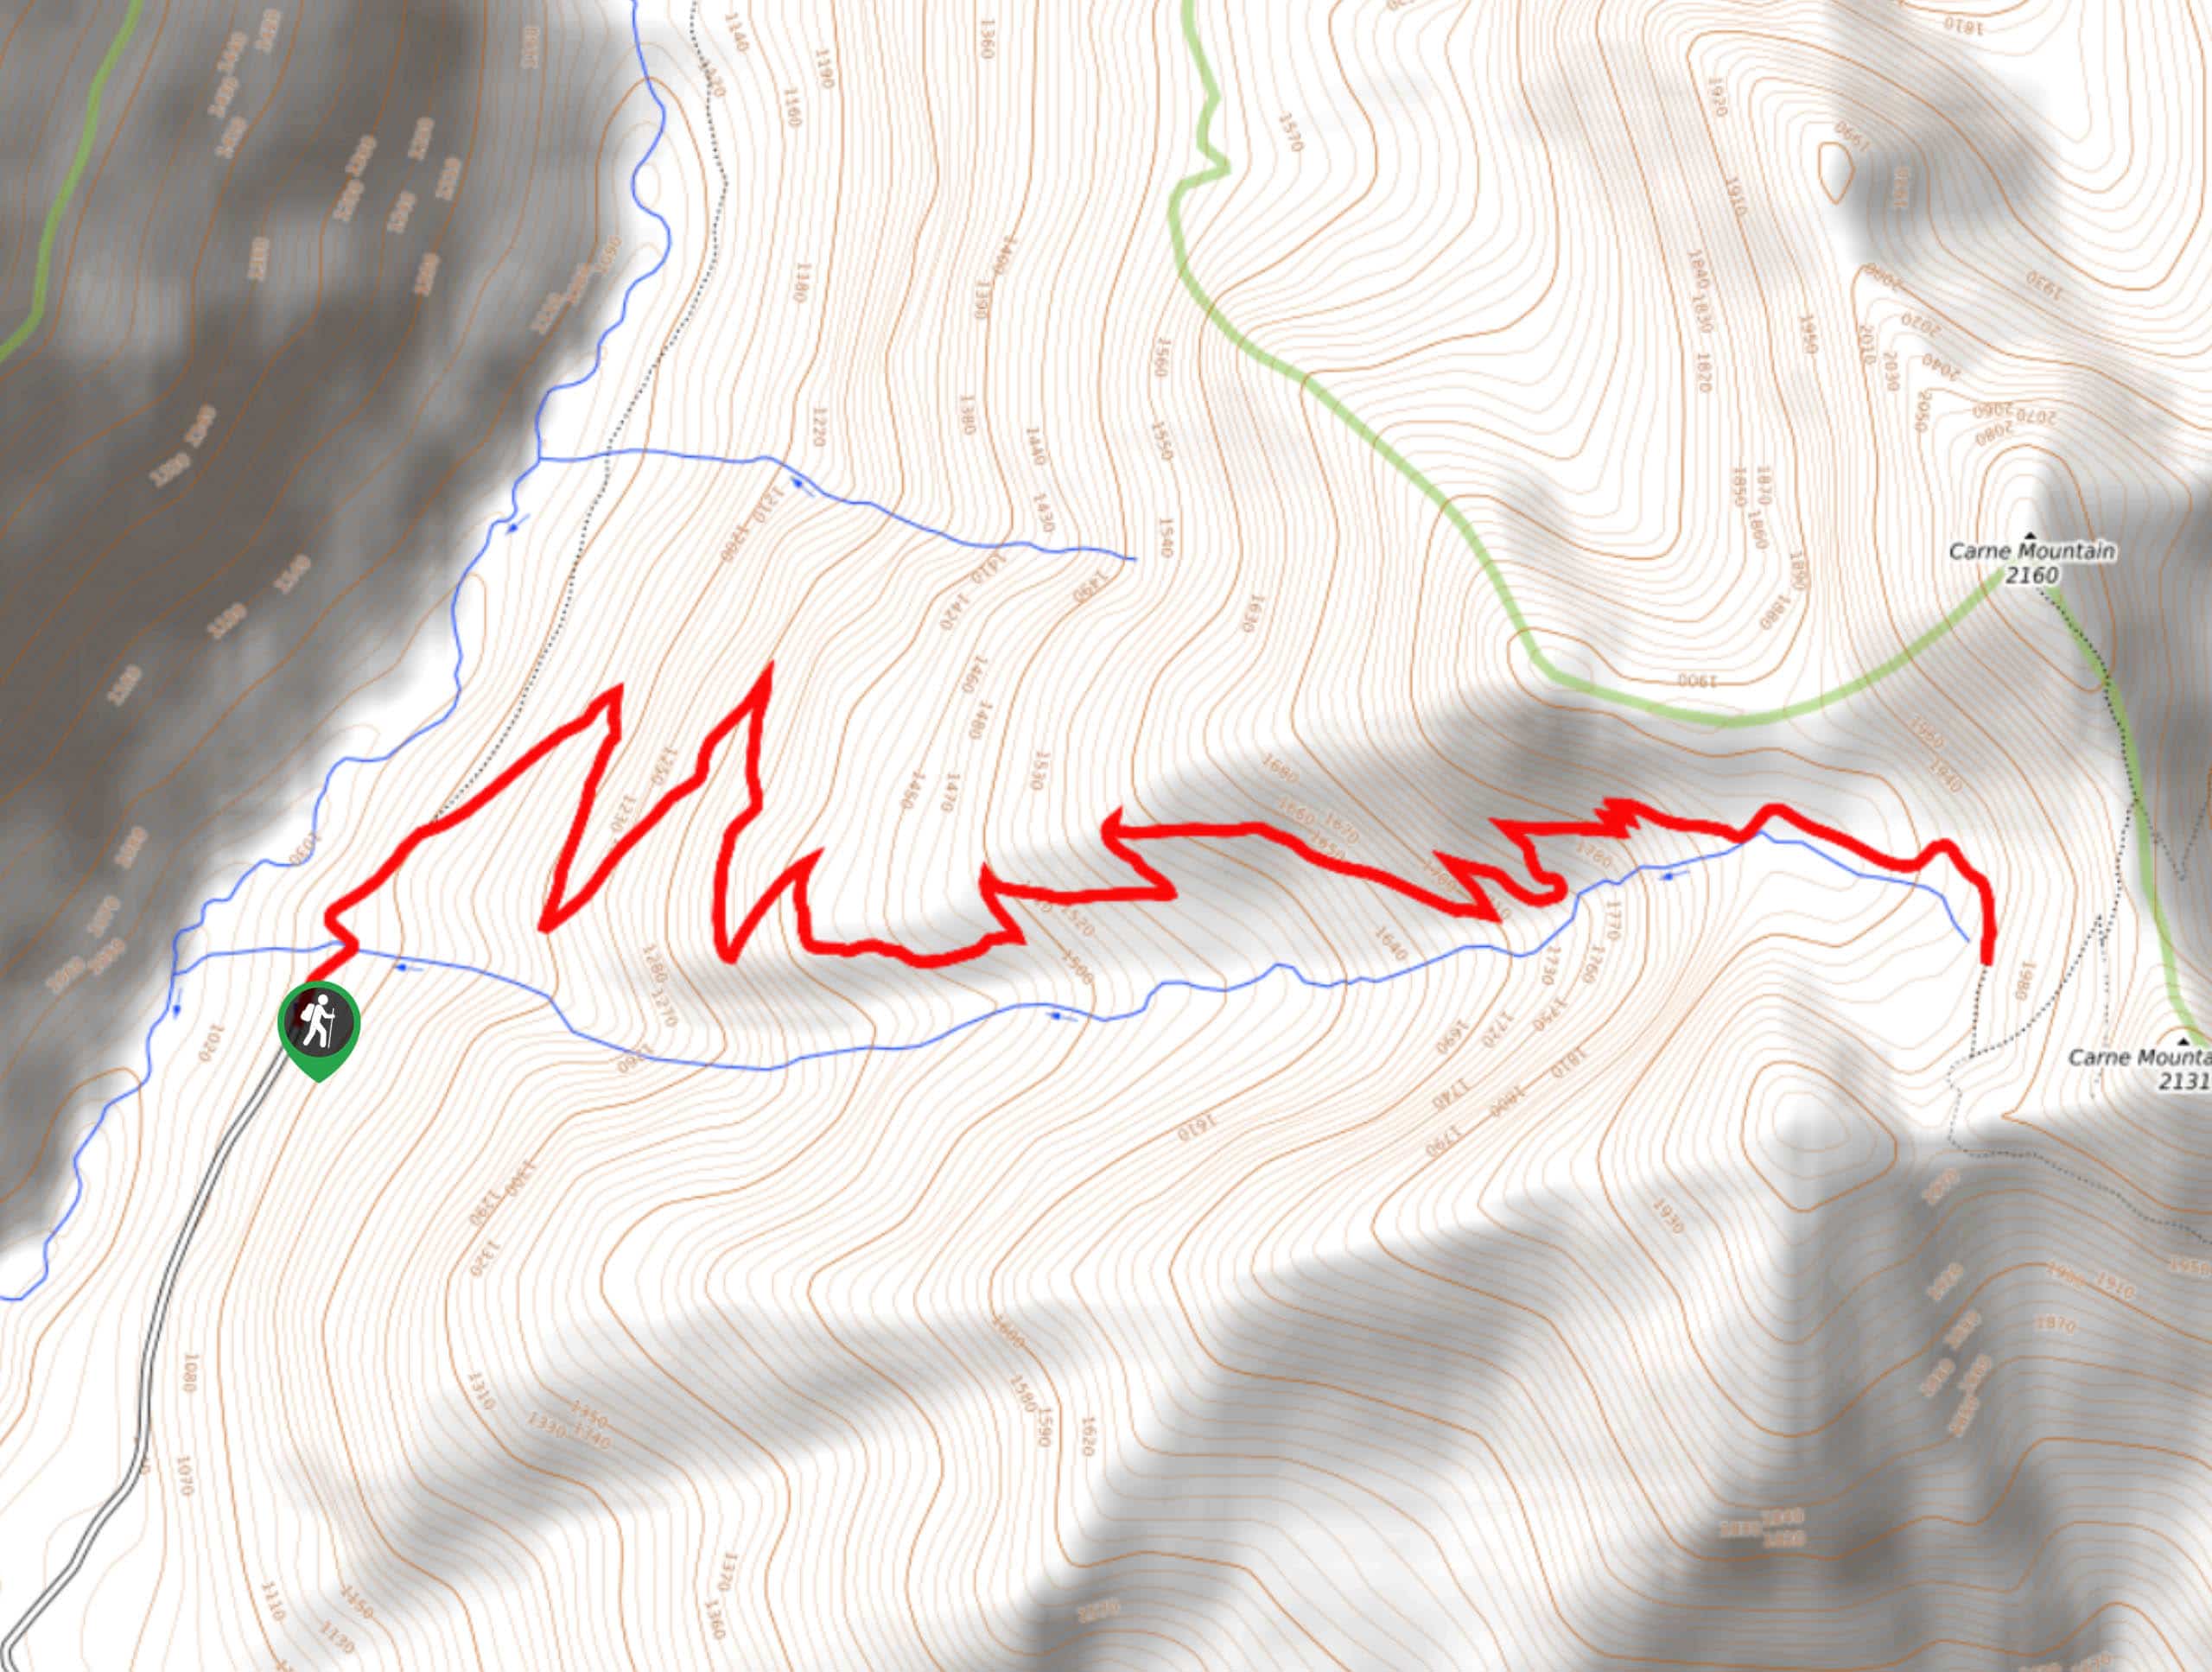 Carne Mountain Basin Hike Map